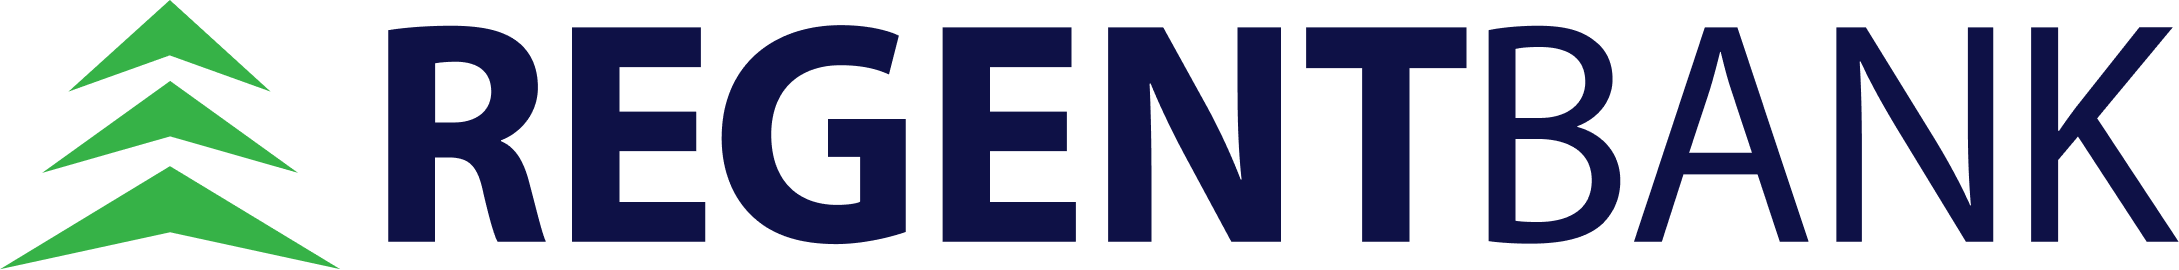 logo-regent-bank.png